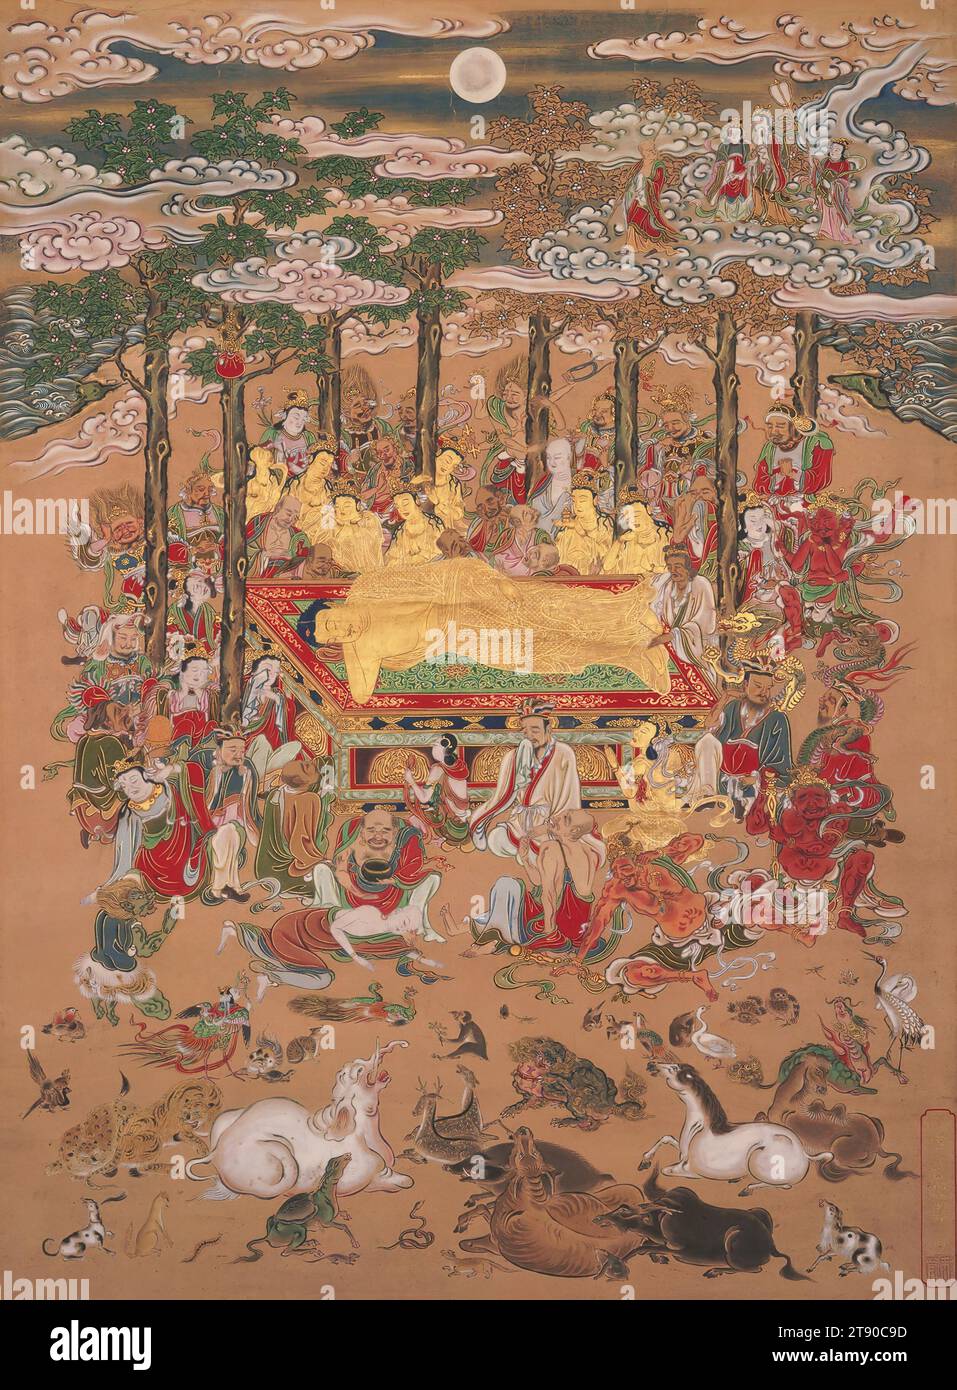 Parinirvana de Sakyamuni, le Bouddha historique, fin du 17e siècle, Hanabusa Itchō, japonais, 1652 - 1724, 24 1/2 × 18 1/8 po (62,23 × 46,04 cm) (image)61 1/8 × 24 1/16 po (155,26 × 61,12 cm) (sans rouleaux), encre, couleur et or sur papier, Japon, 17e siècle, cette peinture représente la mort de Sakyamuni, le Bouddha historique, en 438 av. J.-C. le prince indien devenu sage est montré allongé sur son côté, ayant livré ses enseignements finaux. Au moment de sa mort, le Bouddha entrerait dans le nirvana. Autour de lui se trouvent ses disciples en robes de moines, un groupe de cinq bodhisattvas Banque D'Images